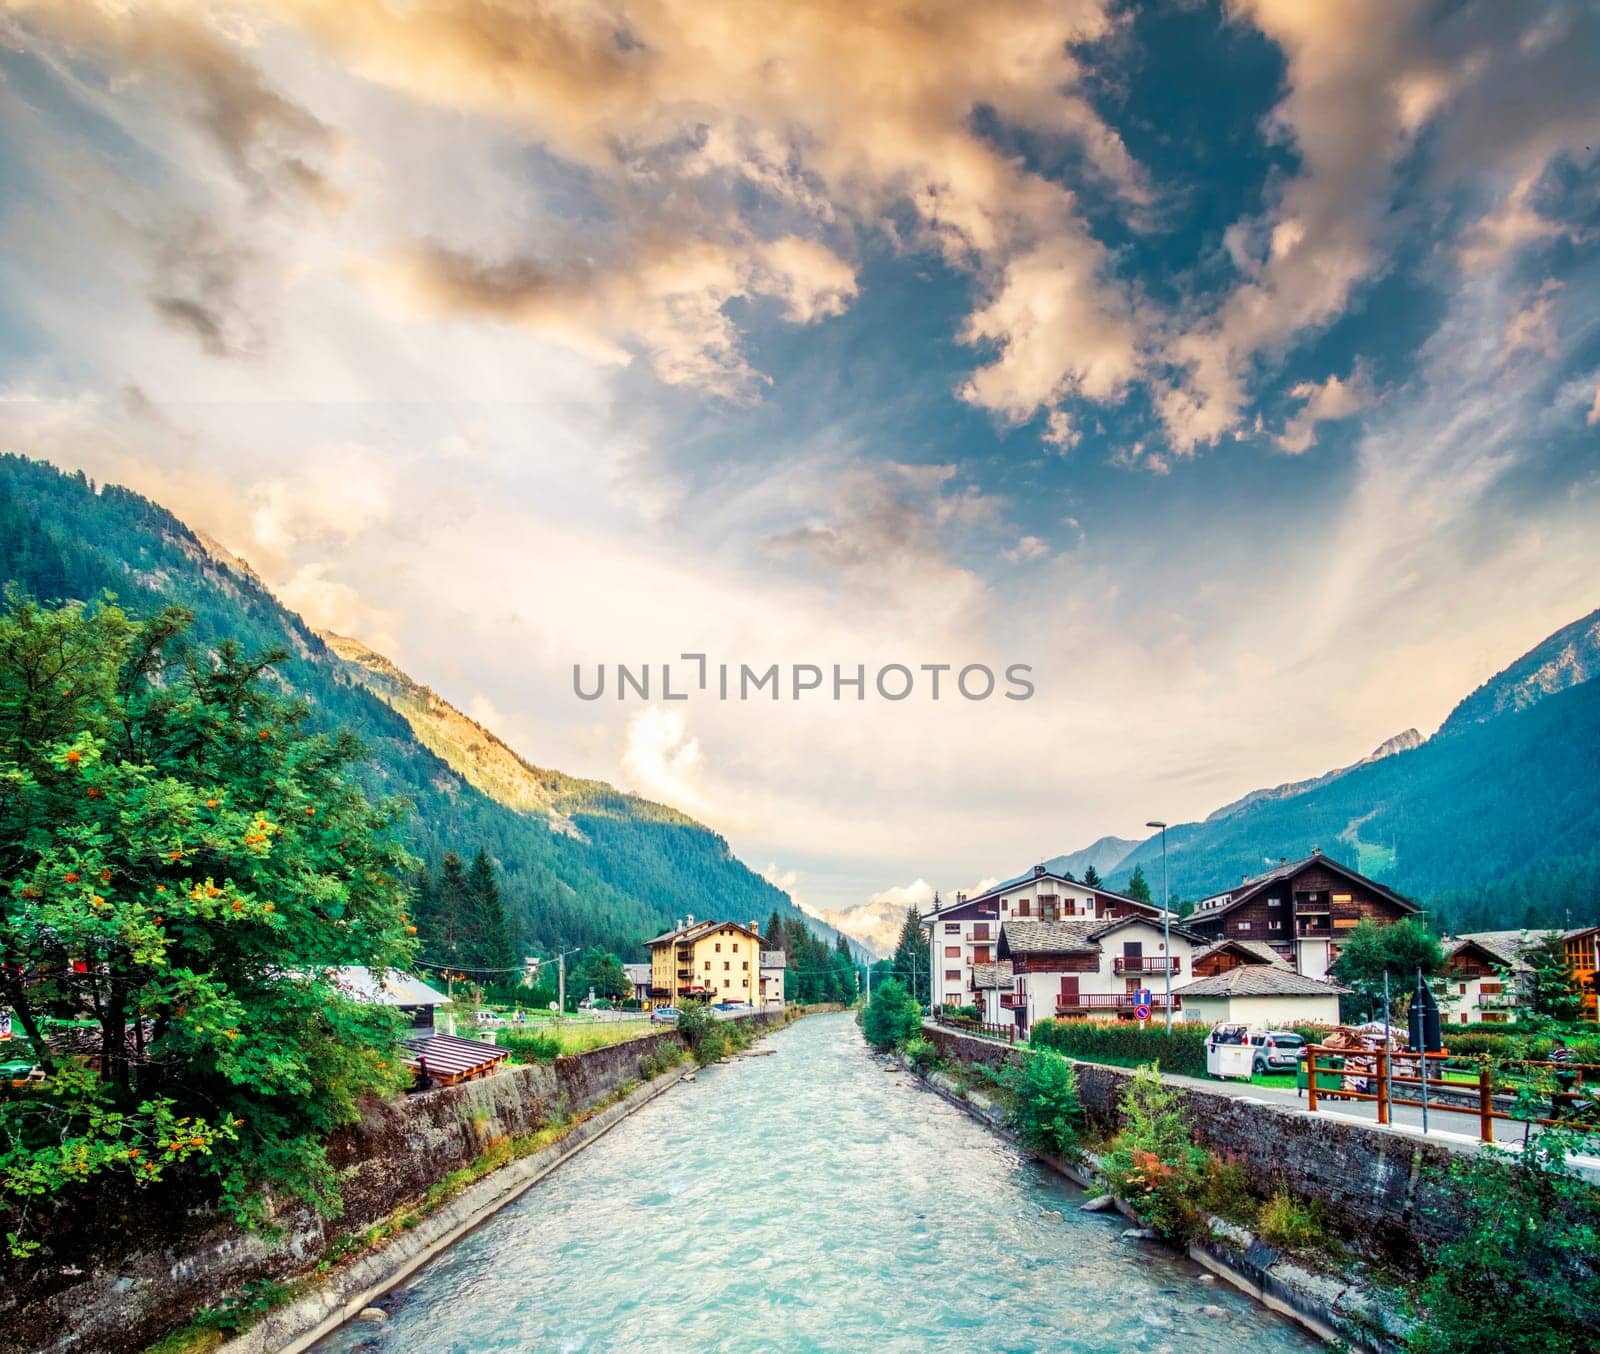 Scenery of river in alpine town by GekaSkr